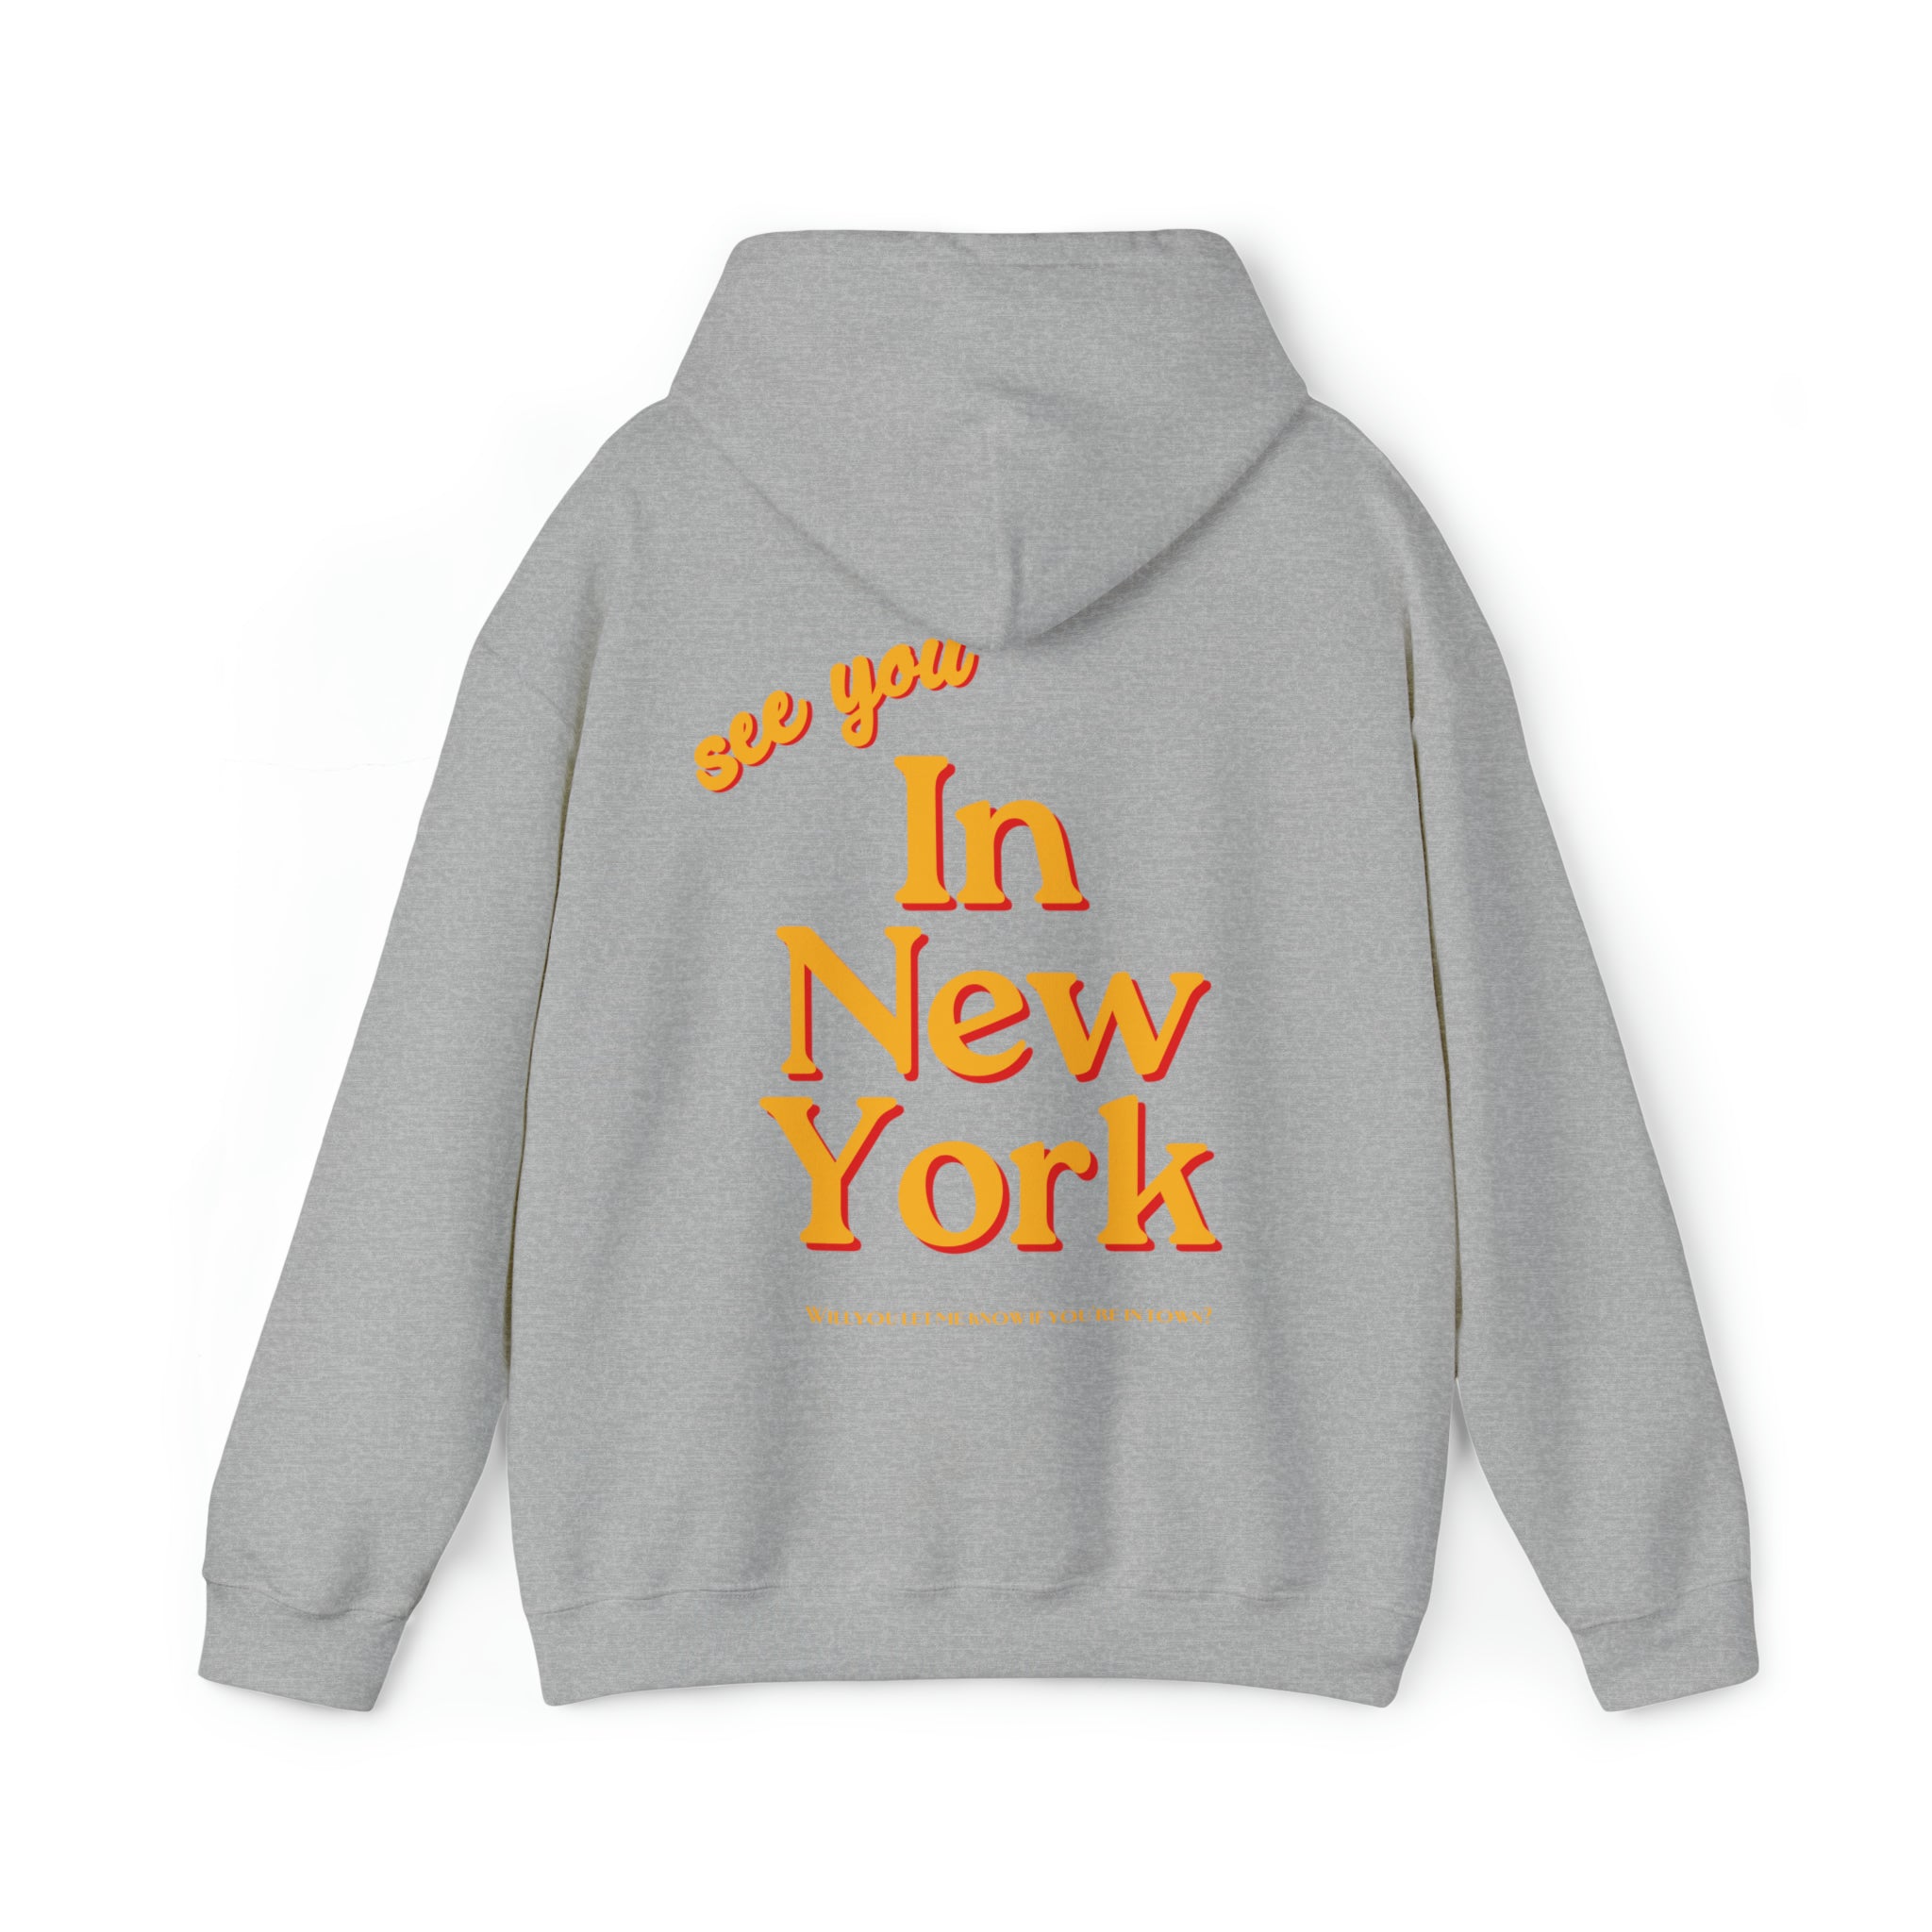 See You In New York Hoodie Sweatshirt